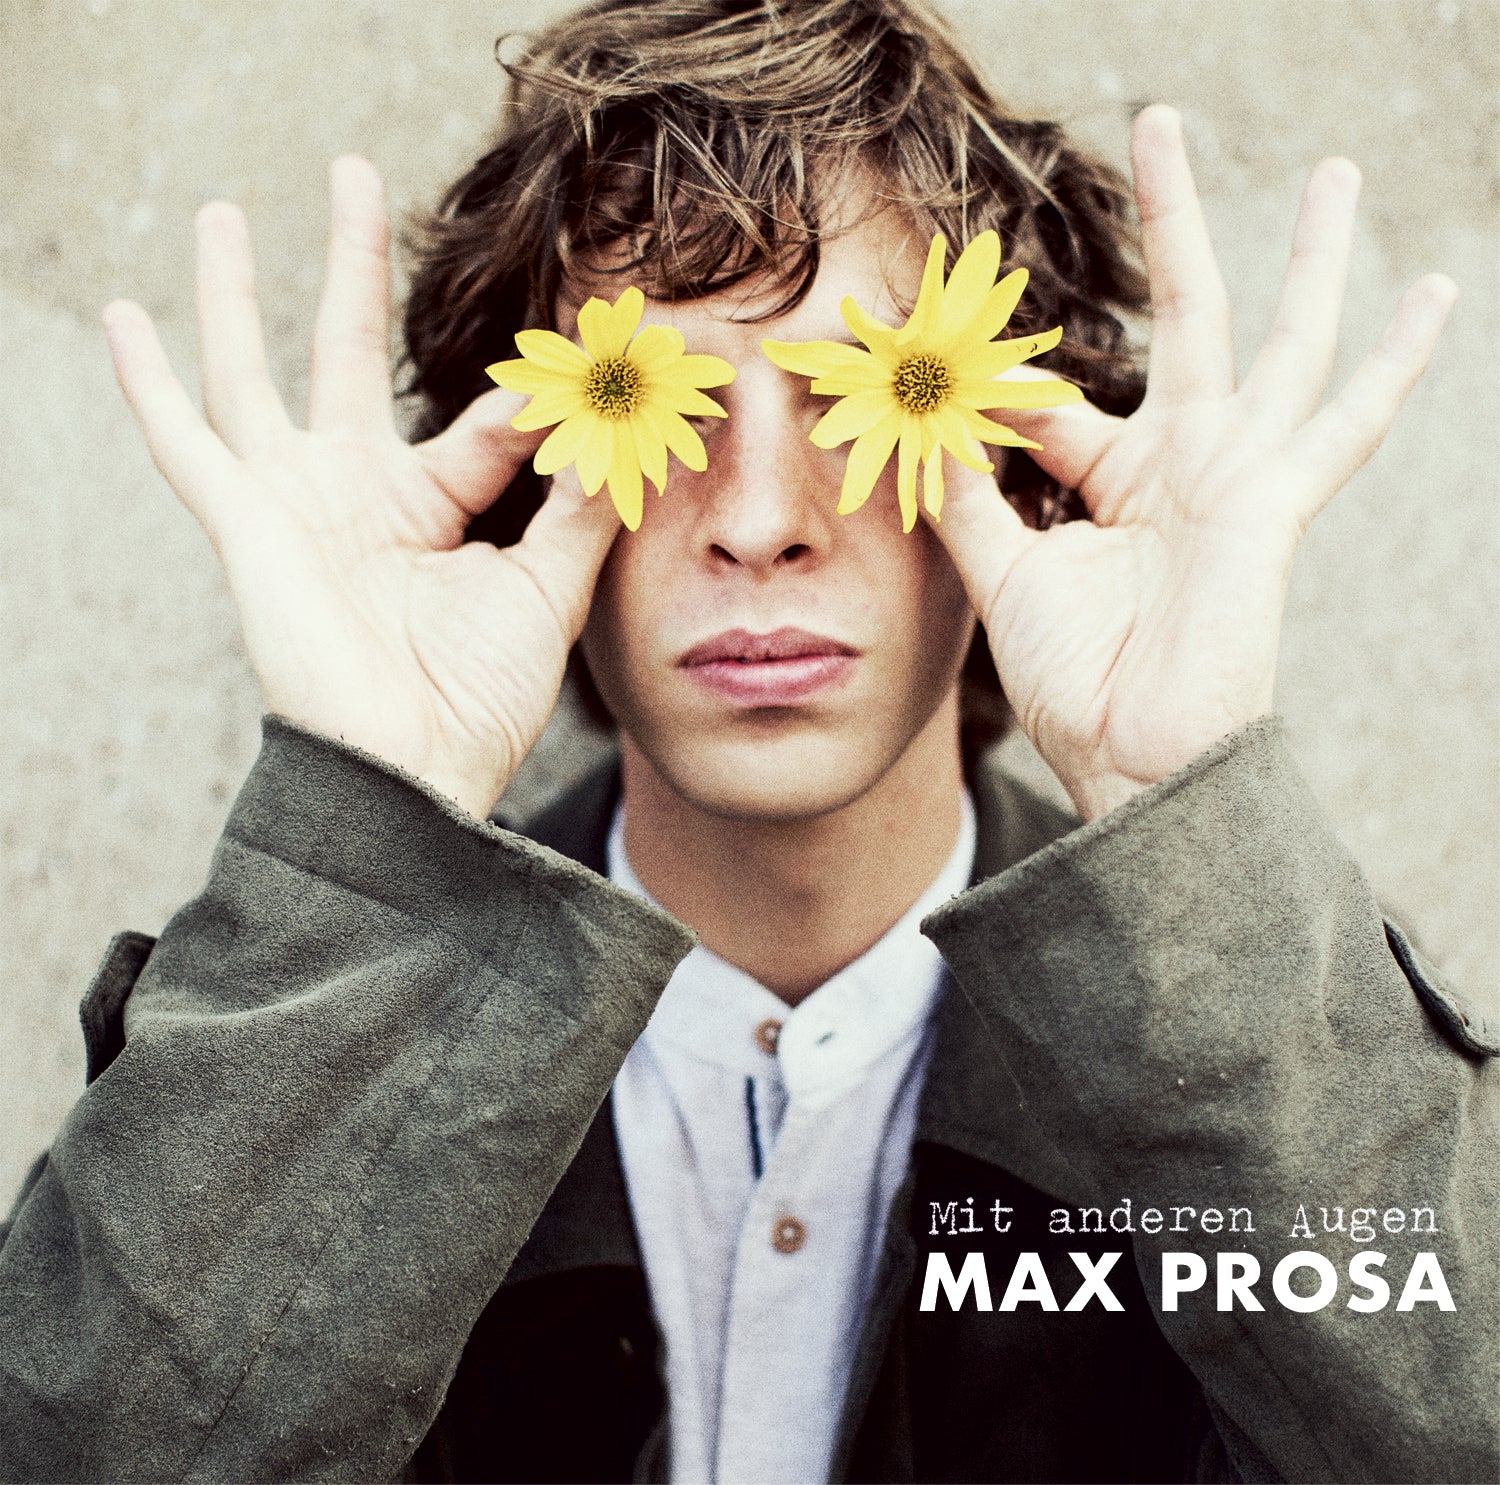 Albumcover: Mit andren Augen. Max Prosa hat einen ernsten Gesichtsausdruck aber hält sich Blumen vor die Augen.